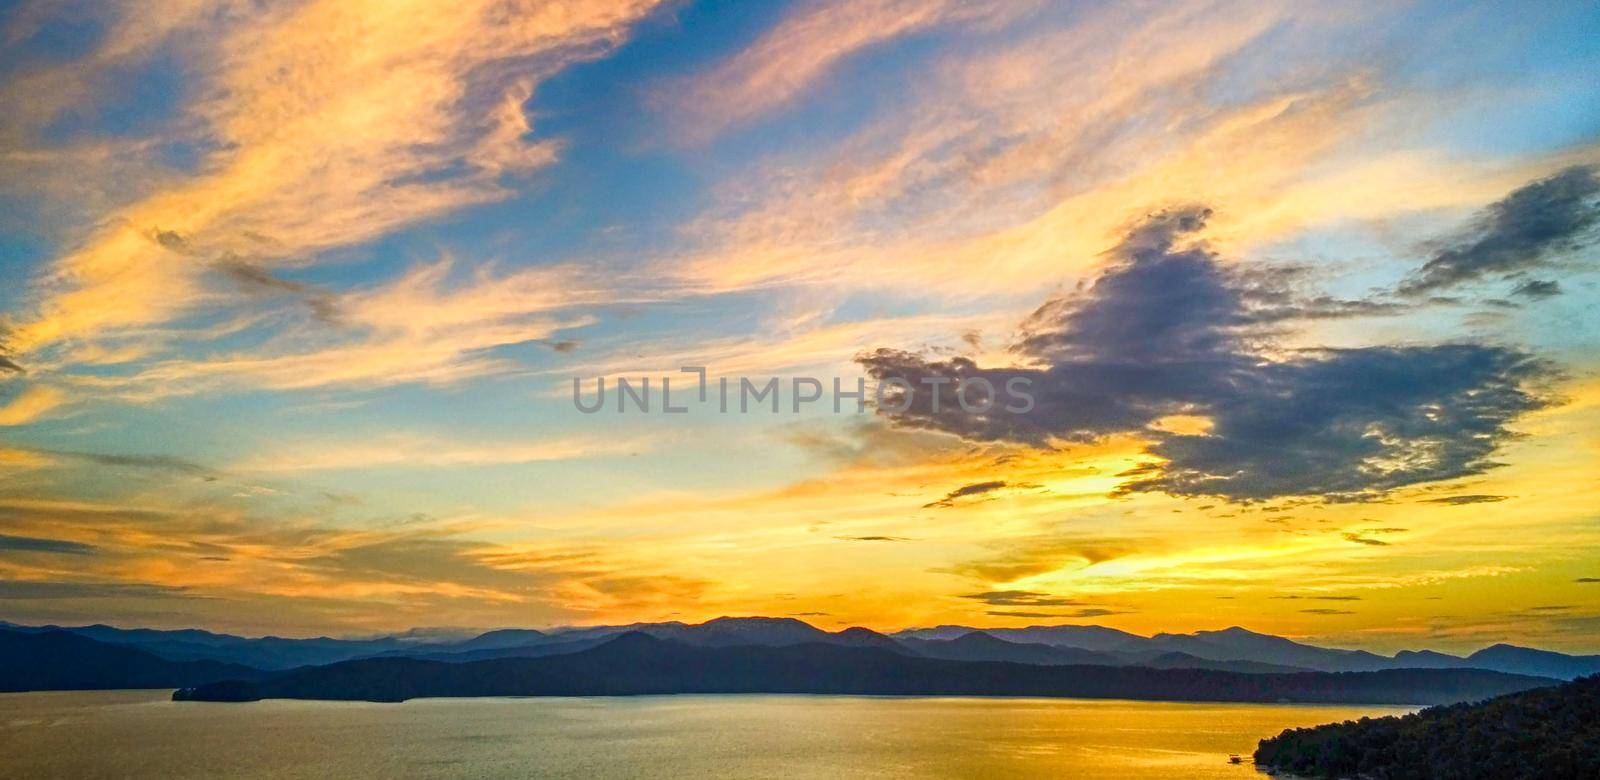 beautiful early morning sunrise on lake jocassee south carolina by digidreamgrafix